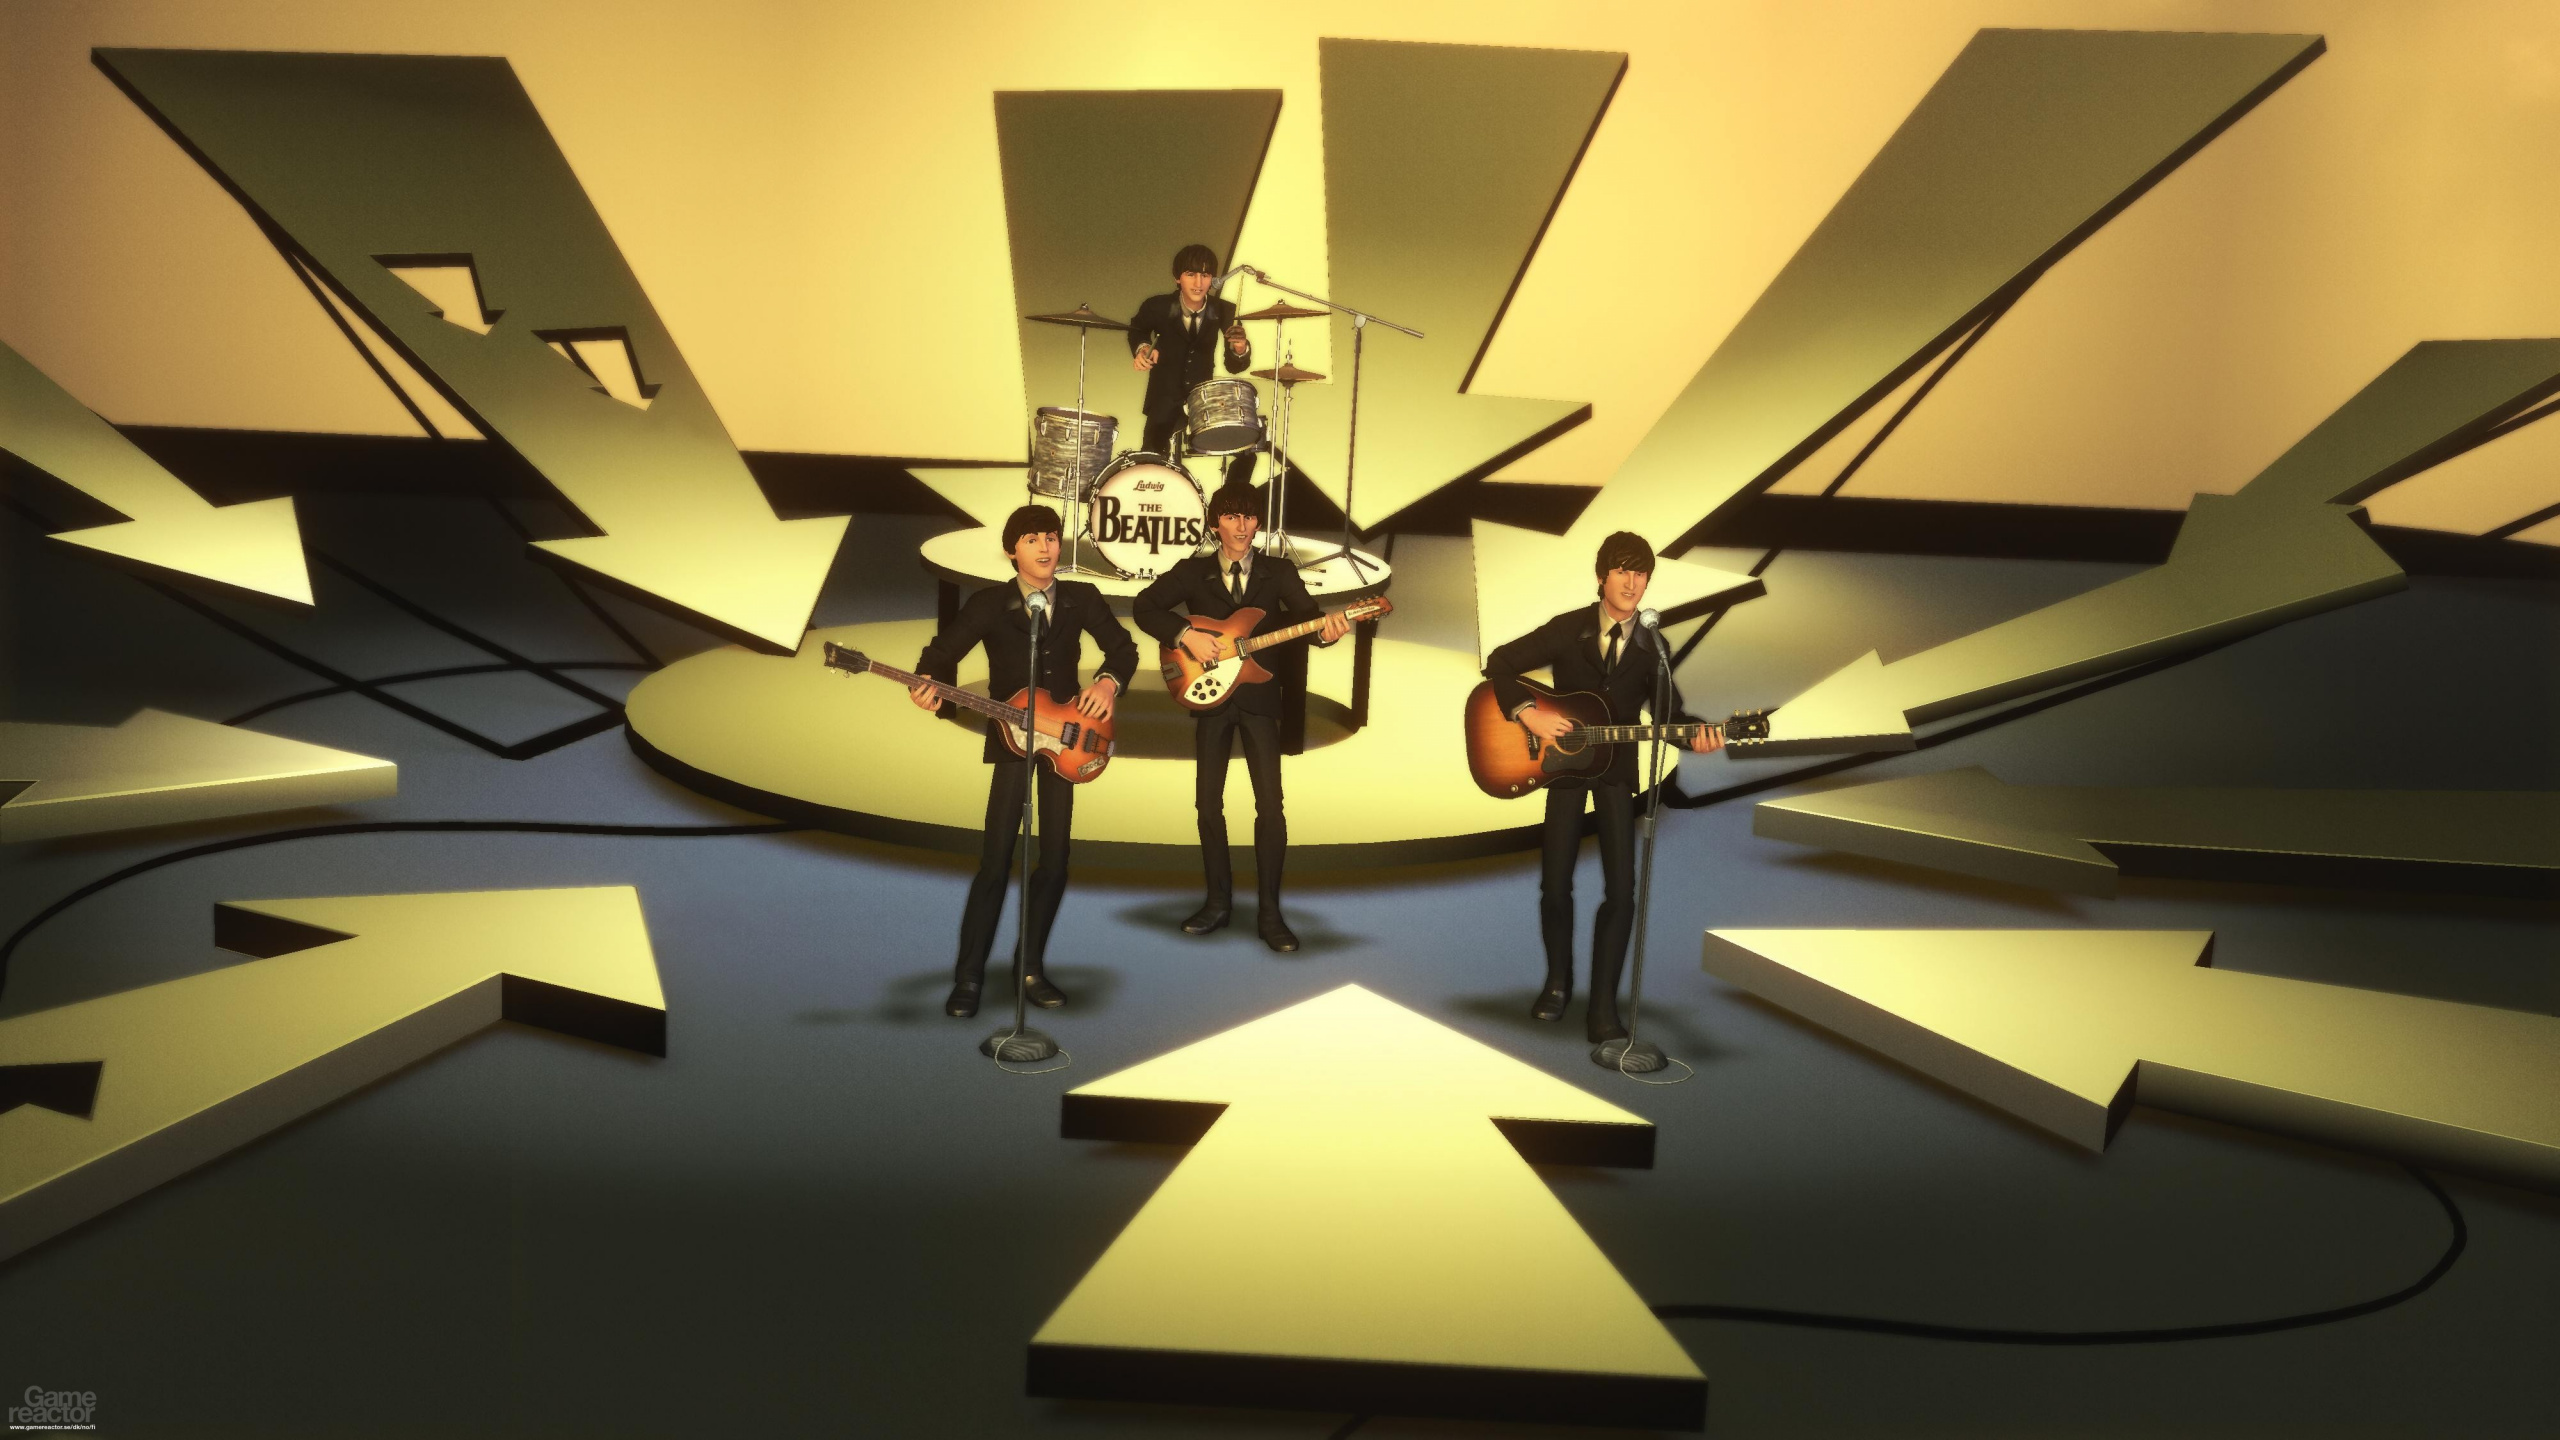 Обои Рок-Группы Битлз, The Beatles, дизайн интерьера, арт, интерьер в разрешении 2560x1440